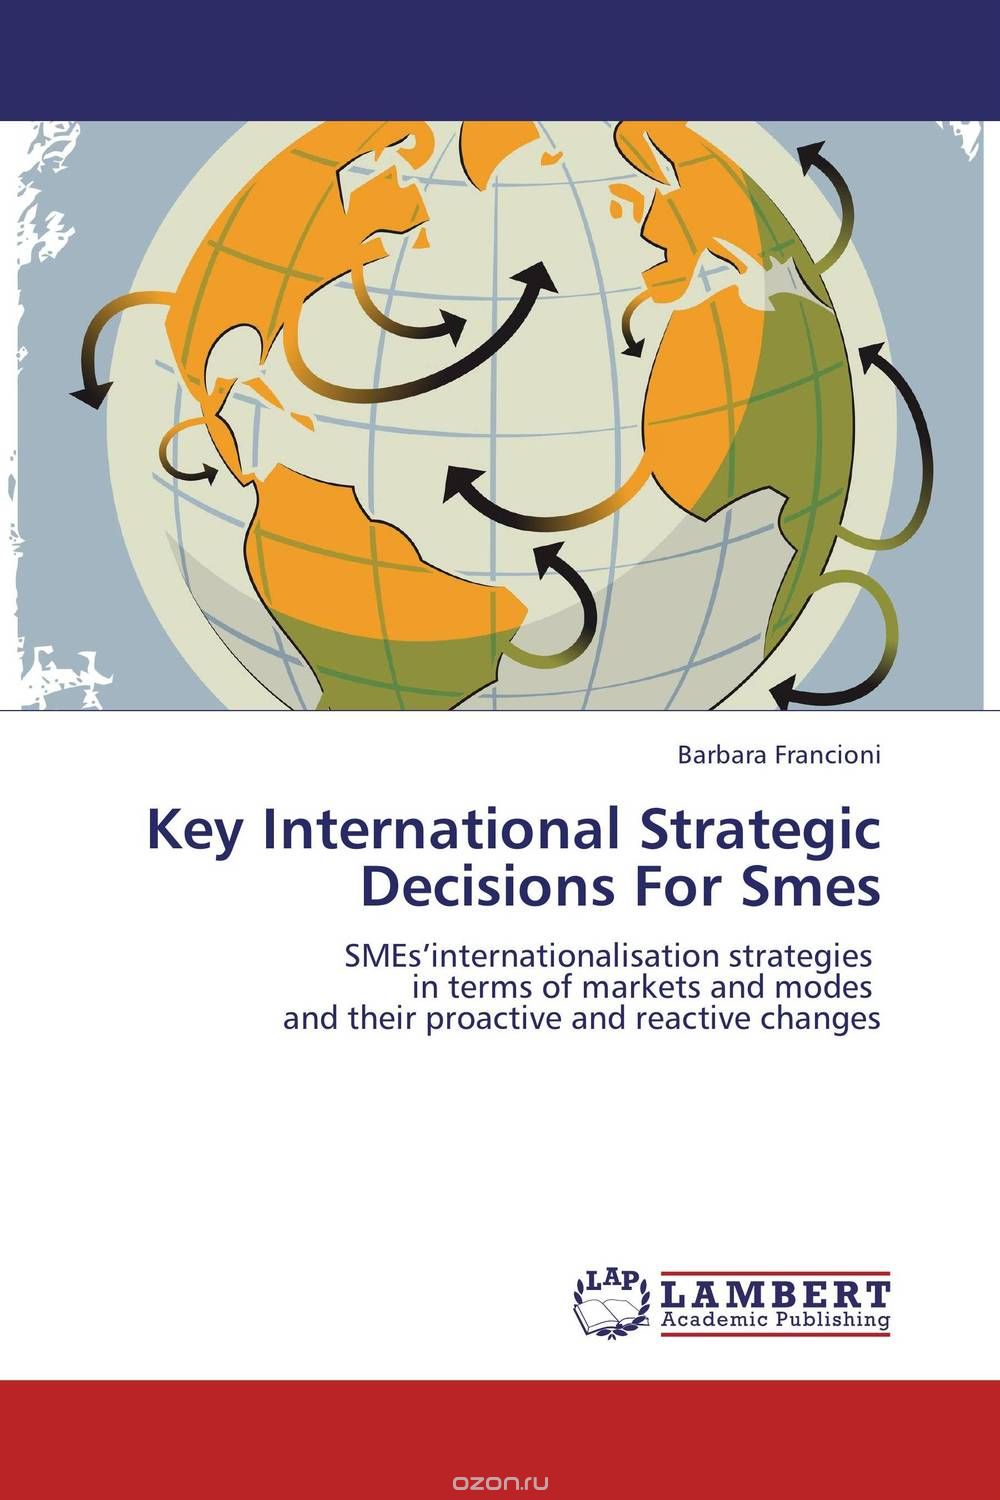 Скачать книгу "Key International Strategic Decisions For Smes"